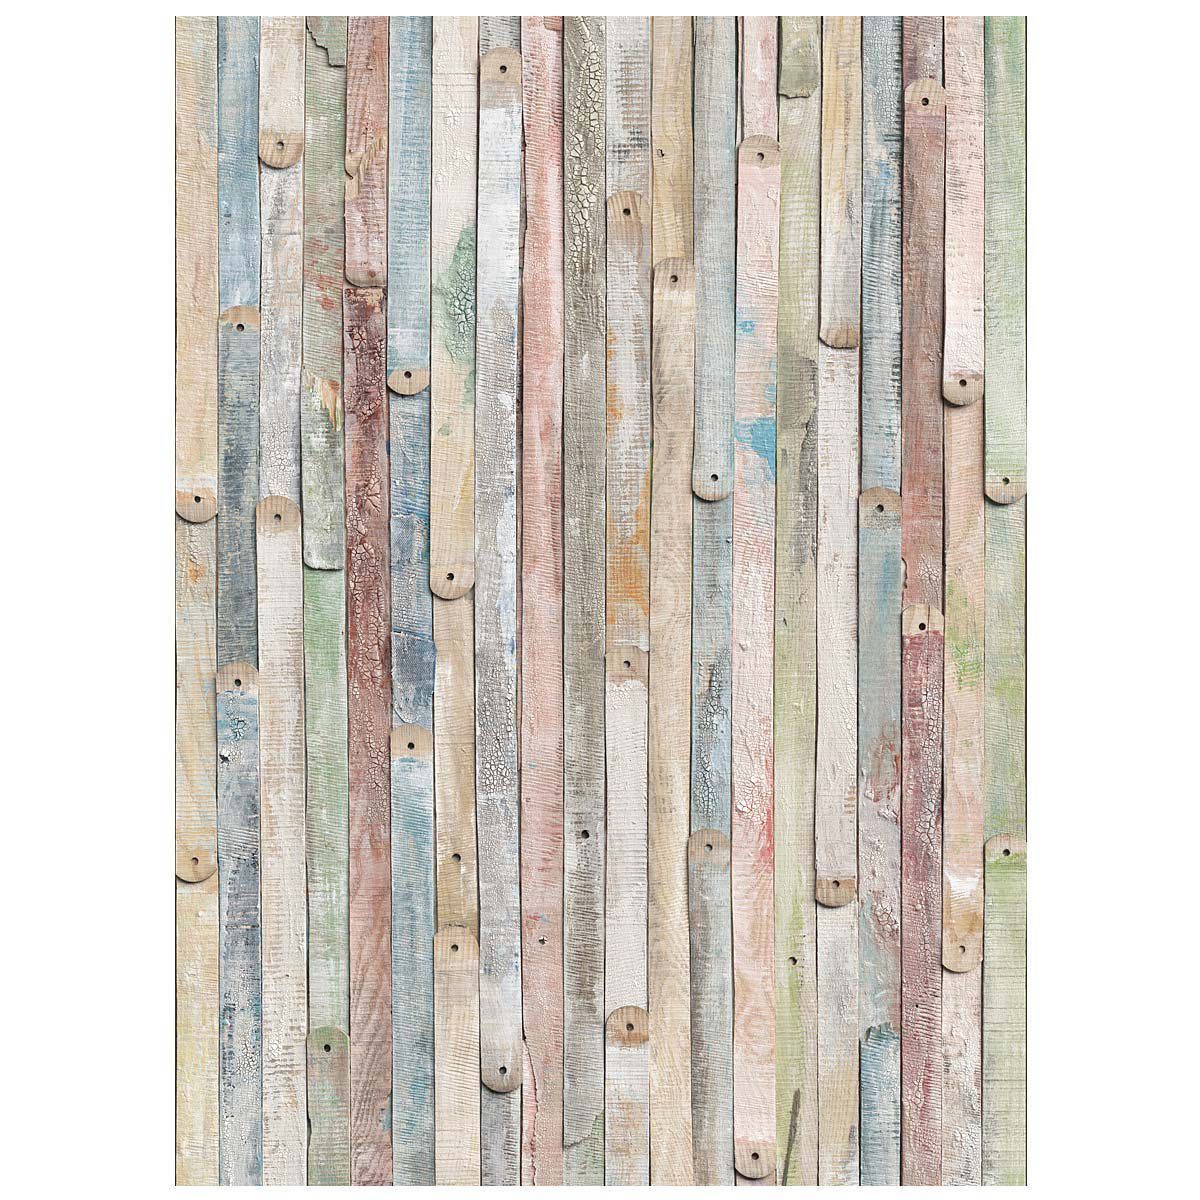 Shabby Chic Holzlatten in frechen Pastelltönen. Vier Teile, inklusive Kleister und ausführlicher Montageanleitung, Maße: 184 x 254 cm, Material: Papier.<br>